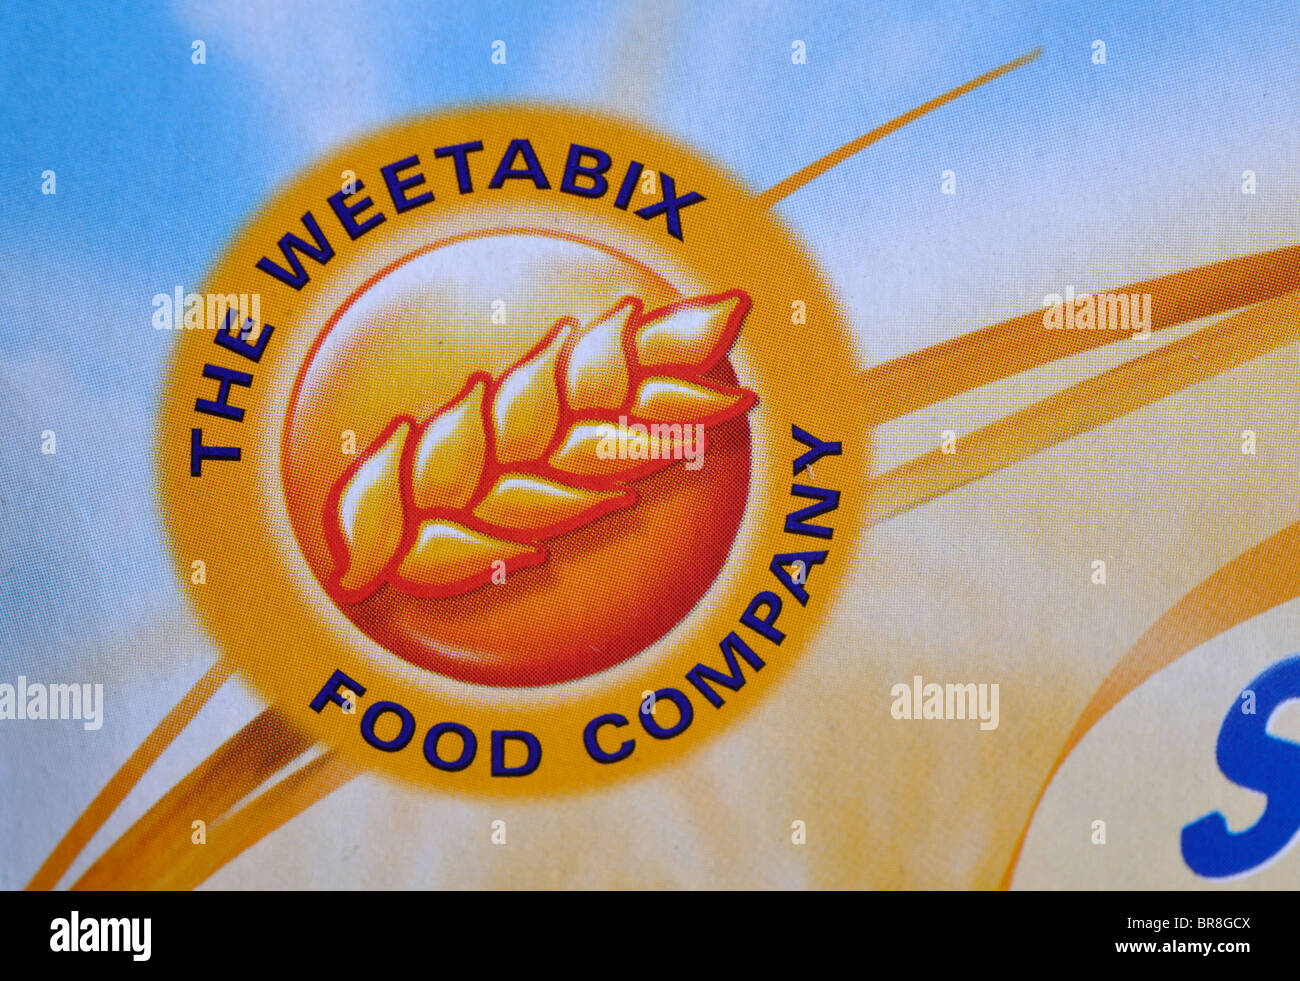 Das Weetabix Food Company-Symbol auf der Verpackung Stockfoto